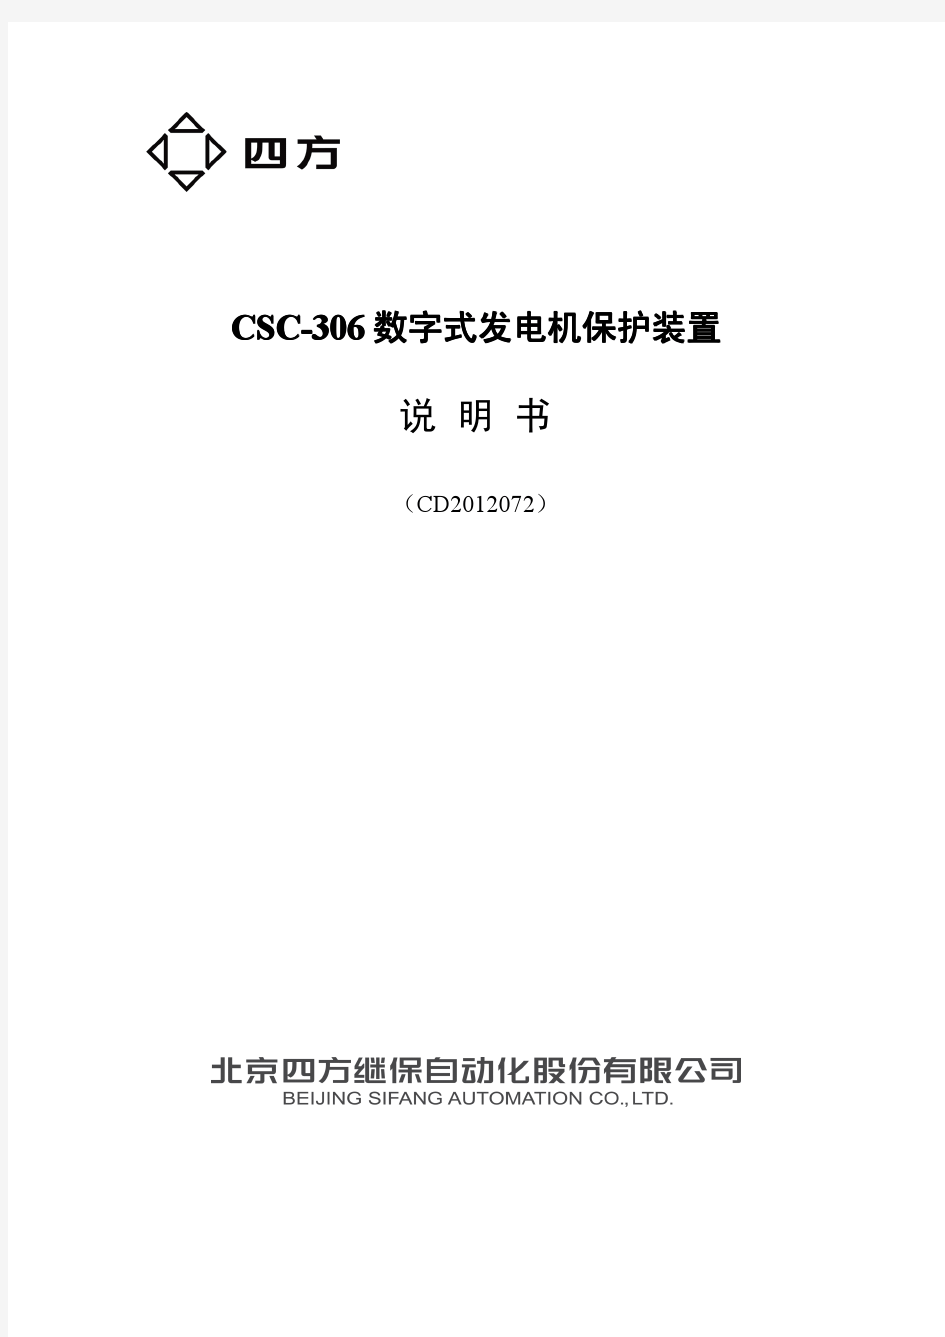 CSC-306数字式发电机保护装置说明书(F0SF.450.092)_V1.00